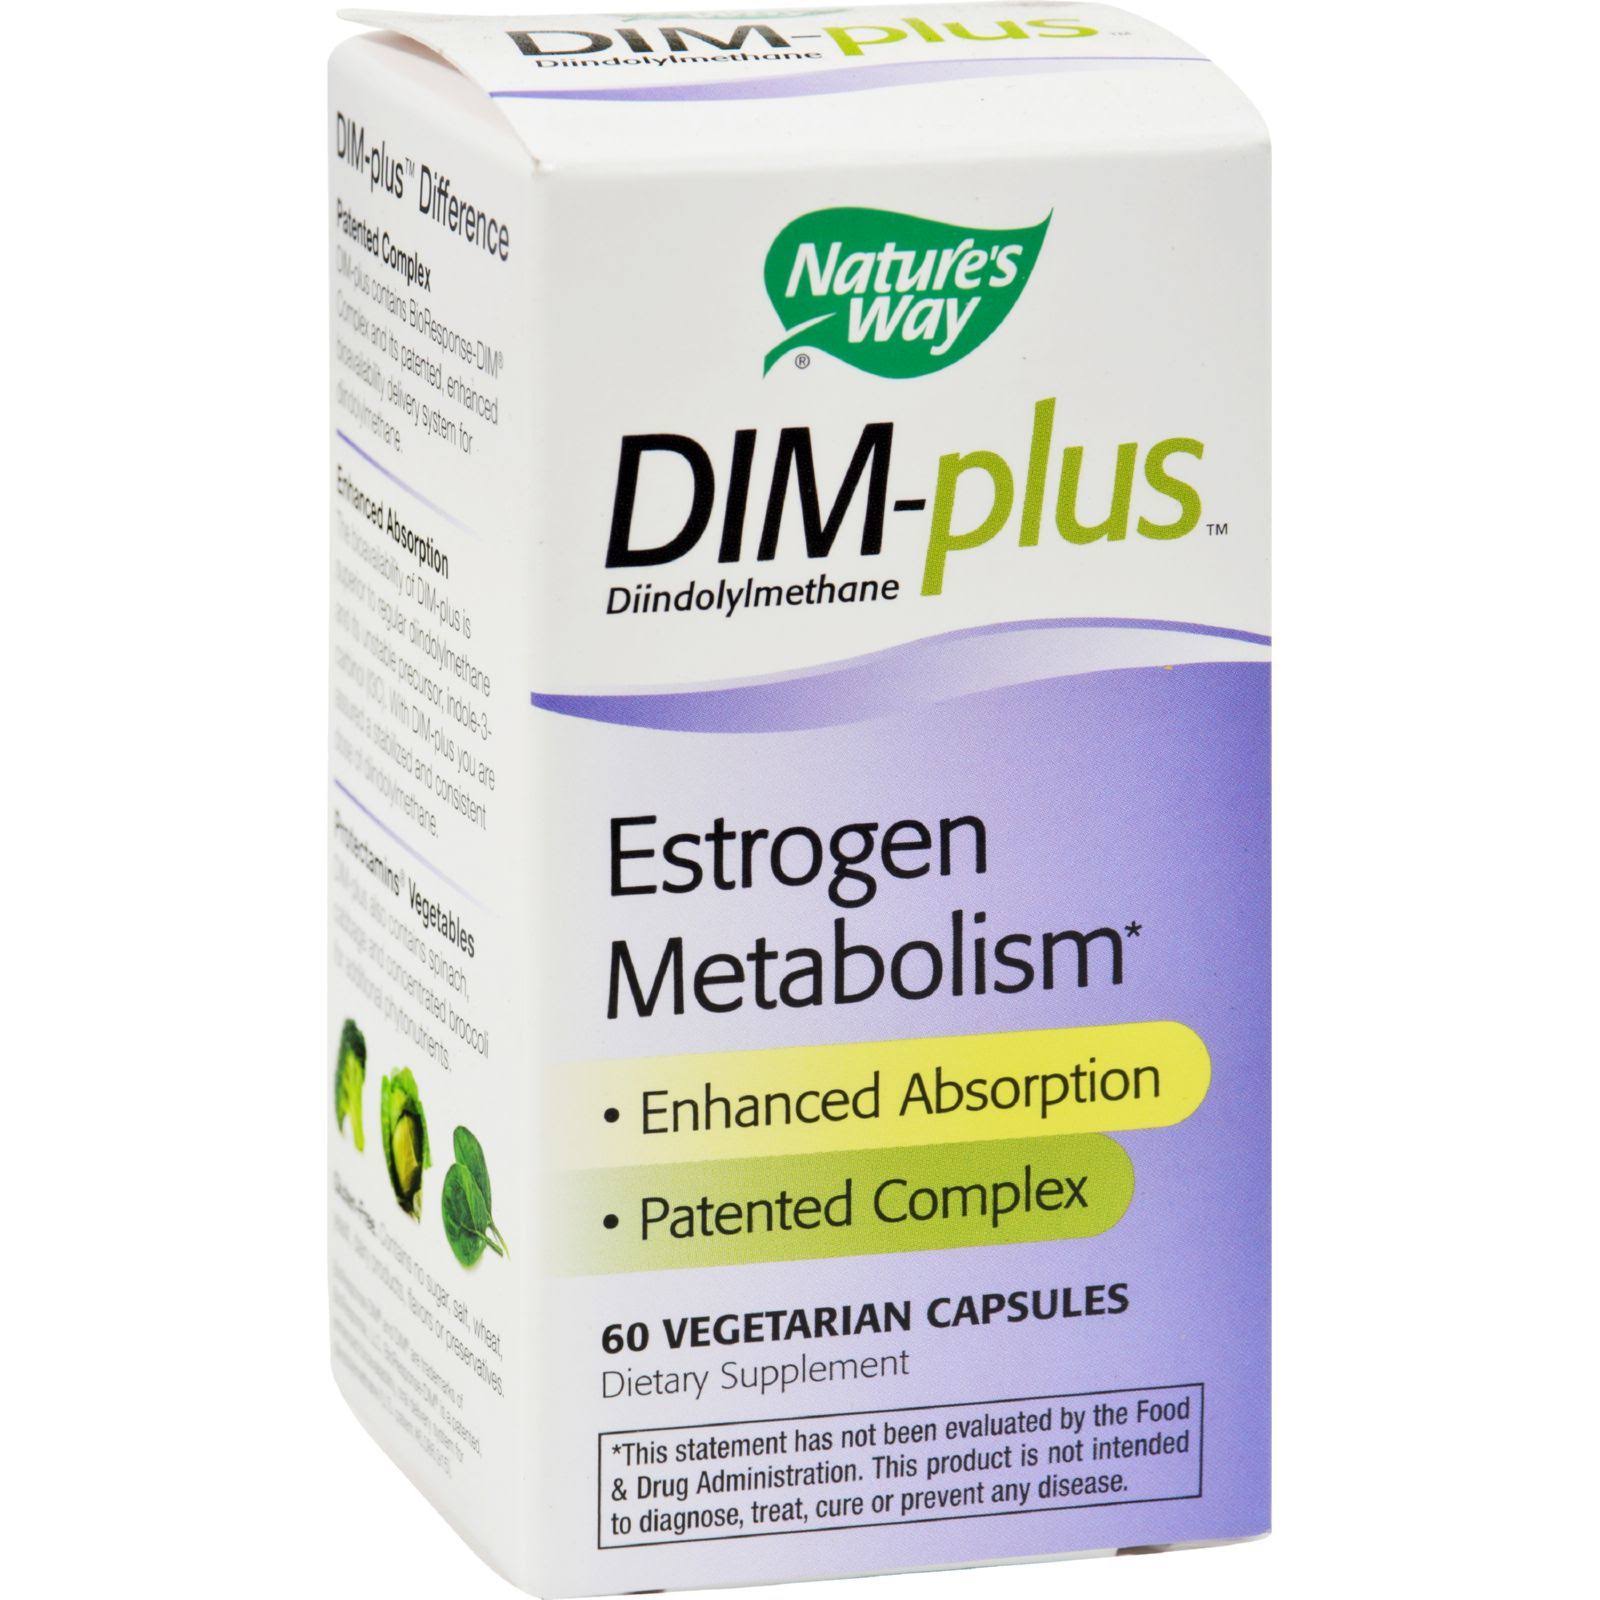 Nature's Way Dim-Plus Estrogen Metabolism Formula - 60 Capsules